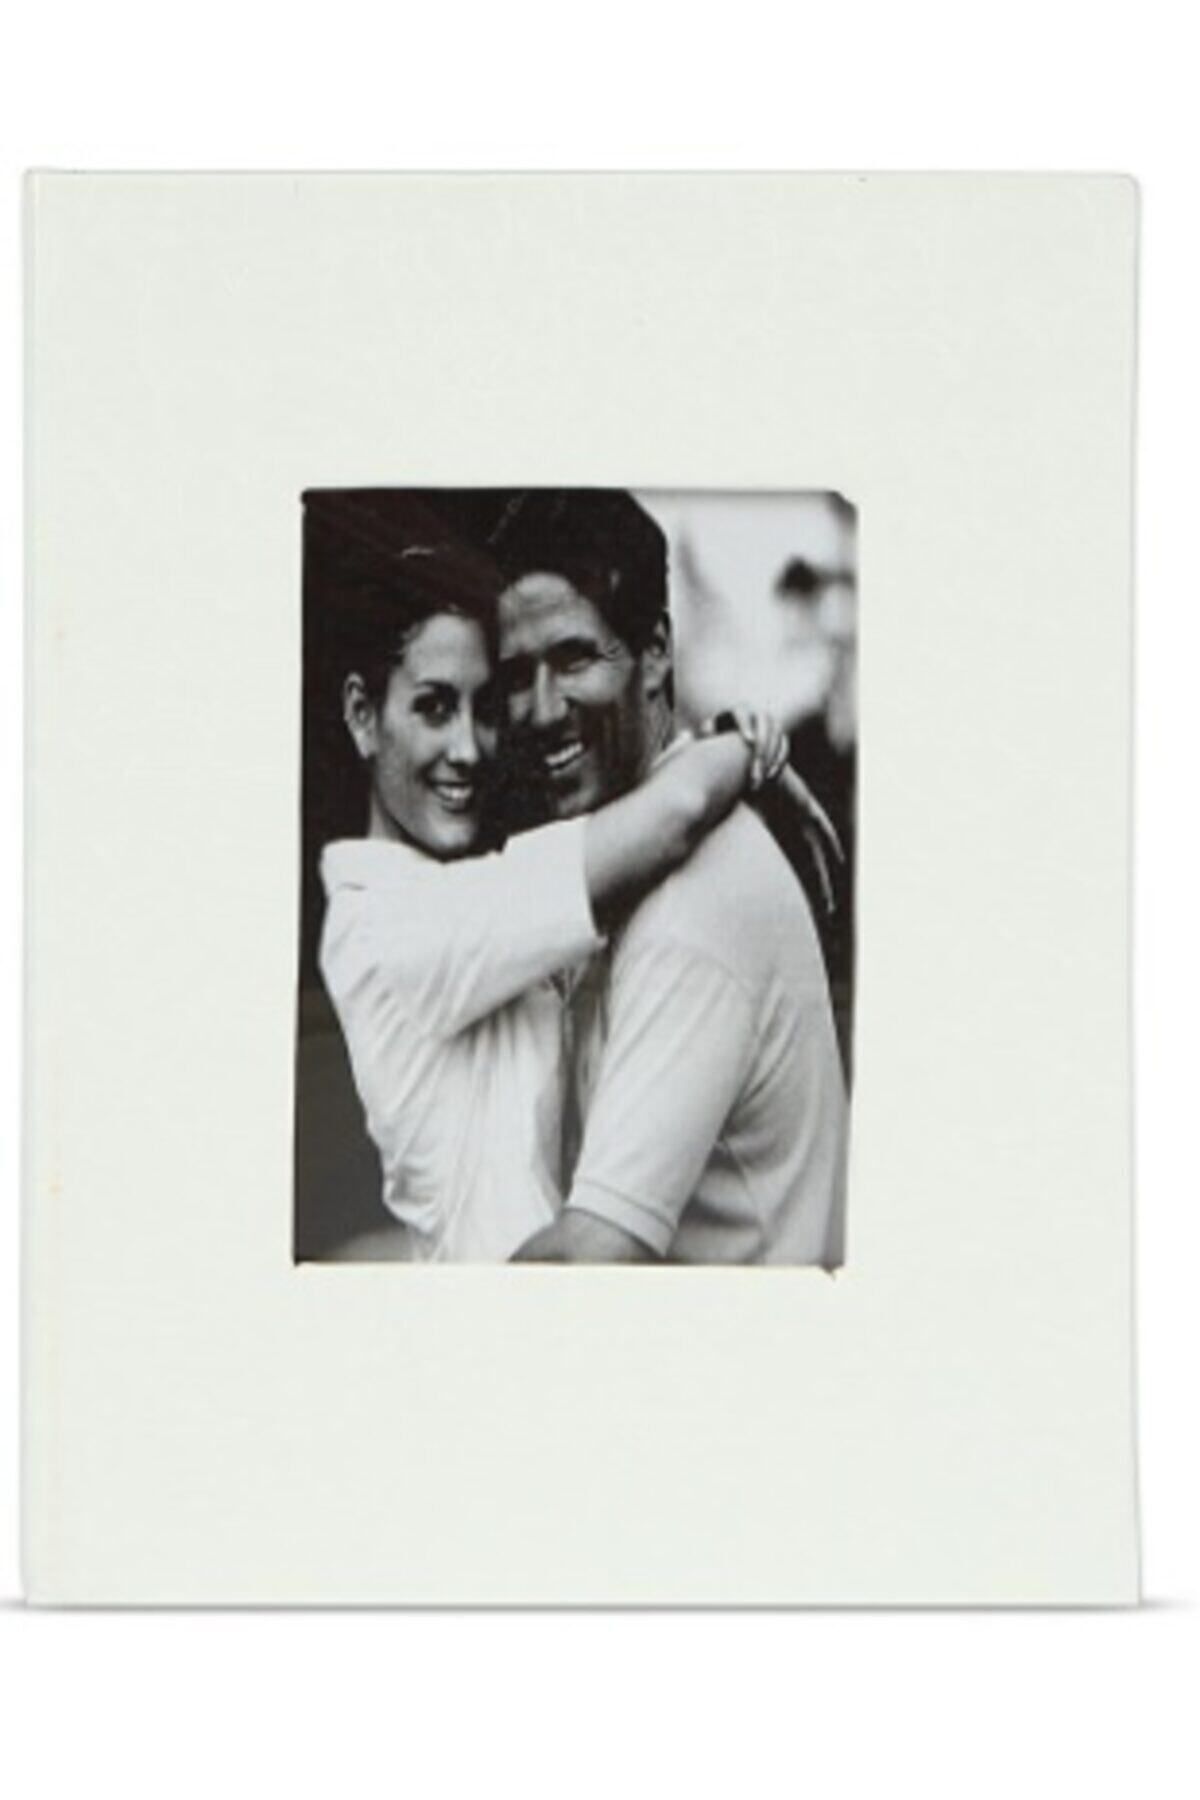 Vural Foto Baskı 100lü 13x18cm Fotoğraf Albümü Beyaz - Deri Kaplı Foto Pencereli - Aile Resimleri Için Album